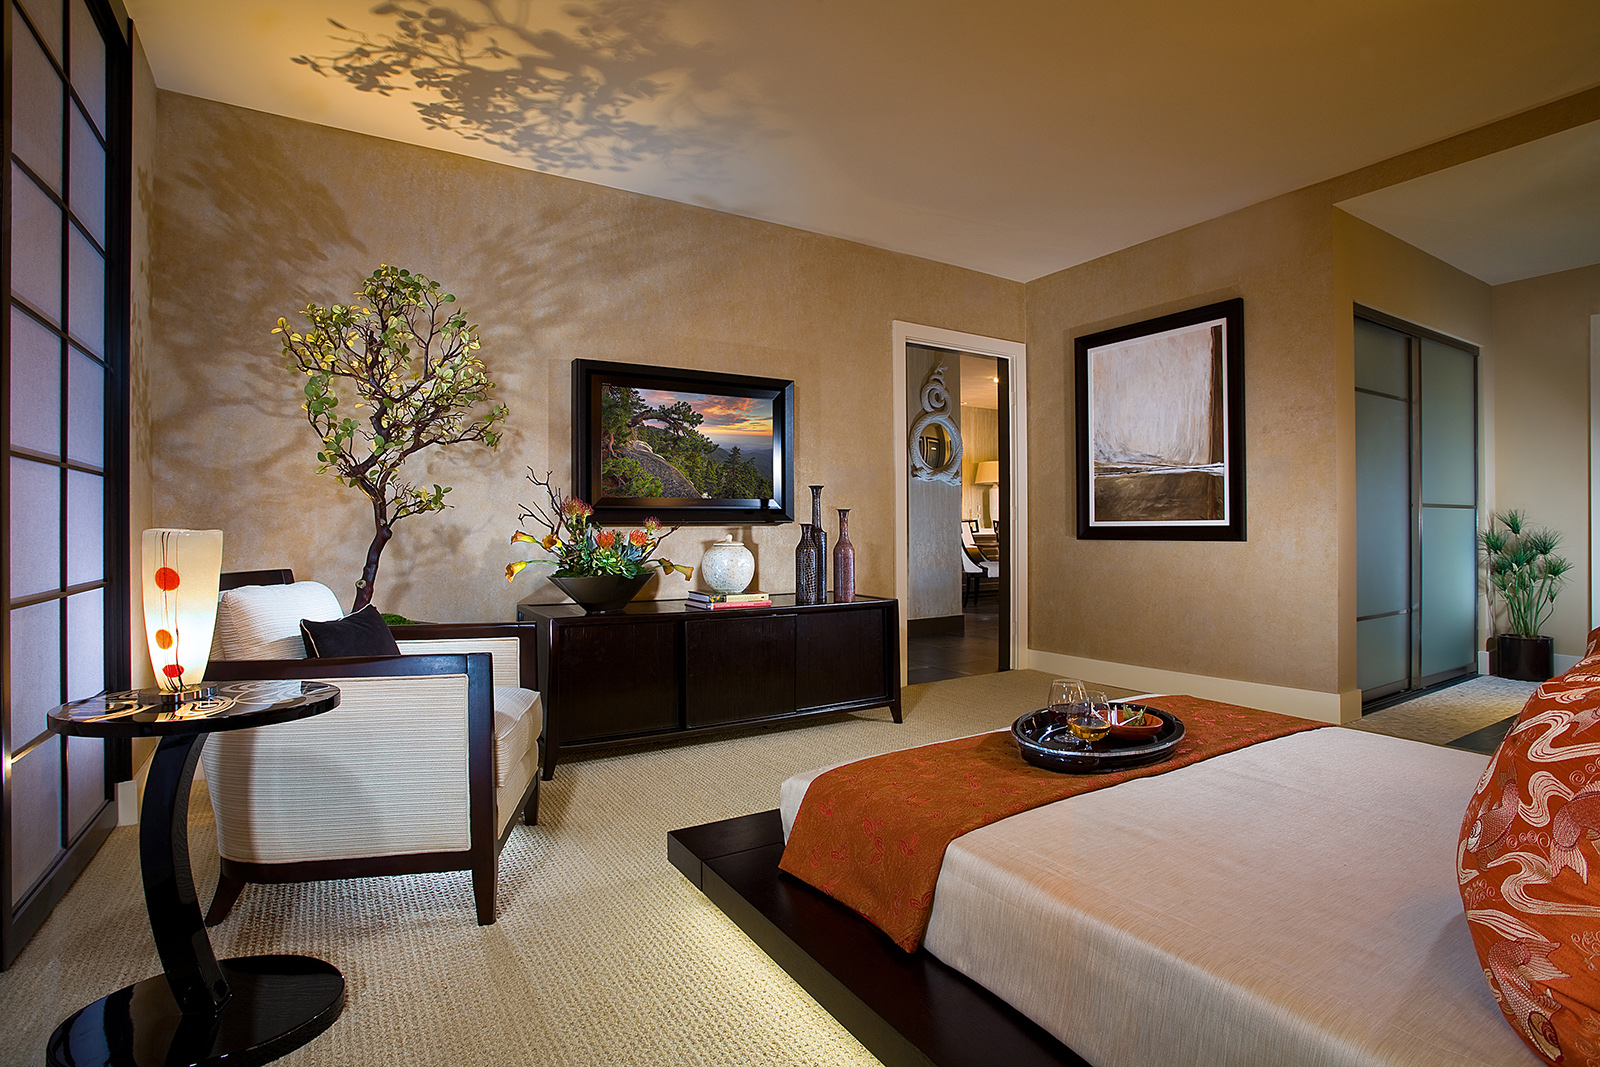 7. Phòng ngủ đôi phong cách mang phong cách nội thất Phương Đông. Những gam màu ấm và ánh sáng nhẹ nhàng phản chiếu lên các bức tường tạo không gian thư giãn trong khi cây xanh mang lại sự tươi mới cho căn phòng. Phòng ngủ rất ấm áp, phong cách và thoải mái.